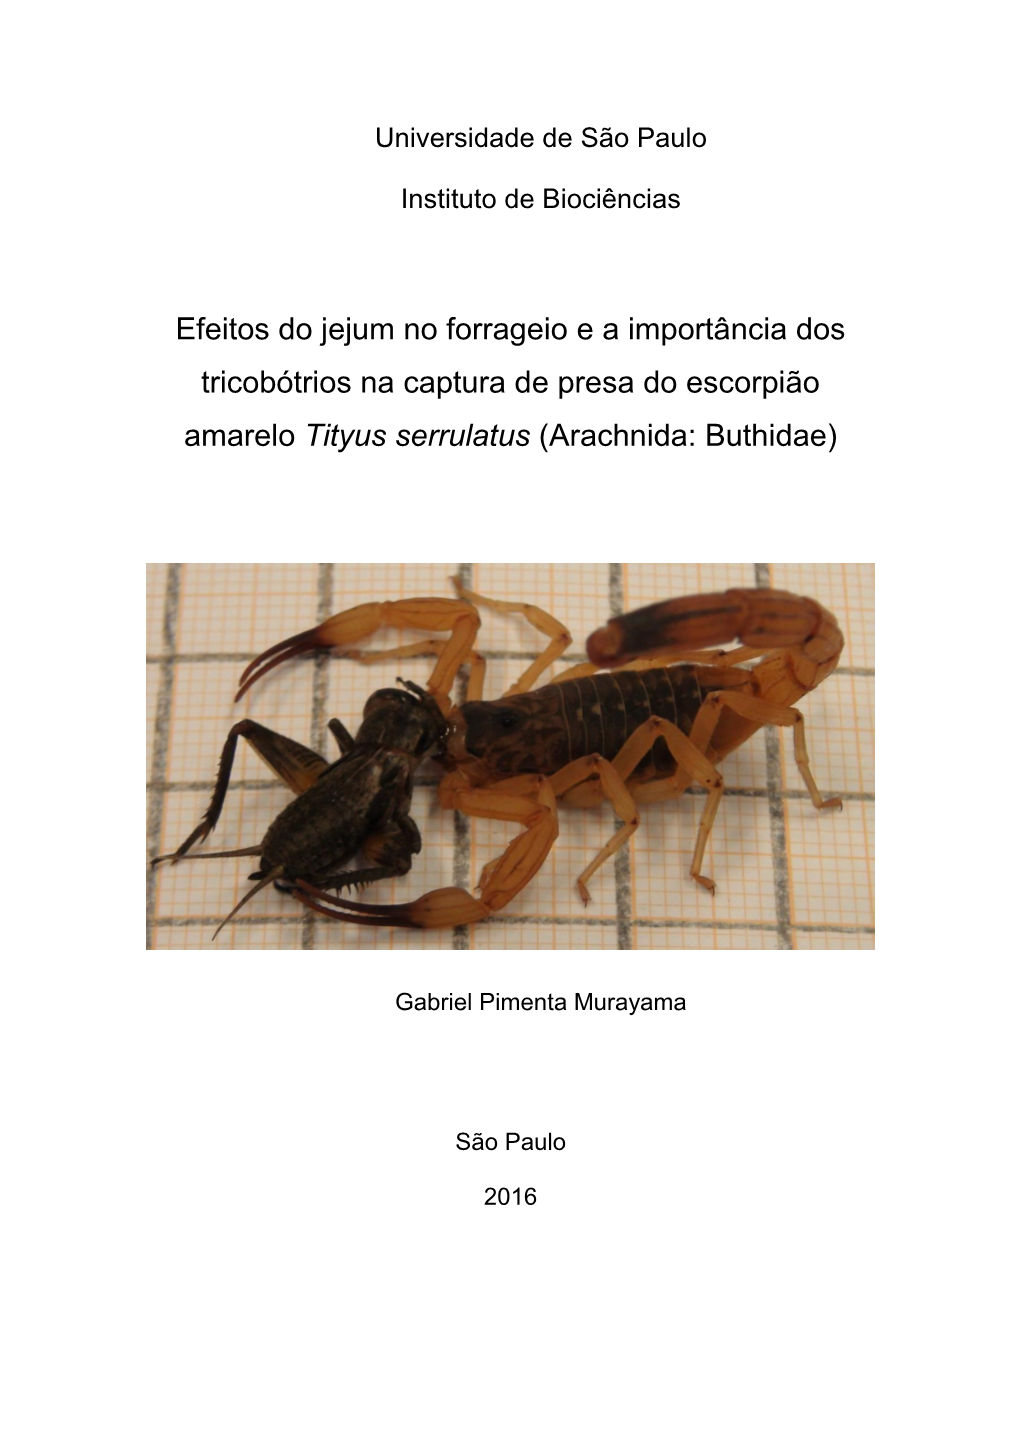 Efeitos Do Jejum No Forrageio E a Importância Dos Tricobótrios Na Captura De Presa Do Escorpião Amarelo Tityus Serrulatus (Arachnida: Buthidae)